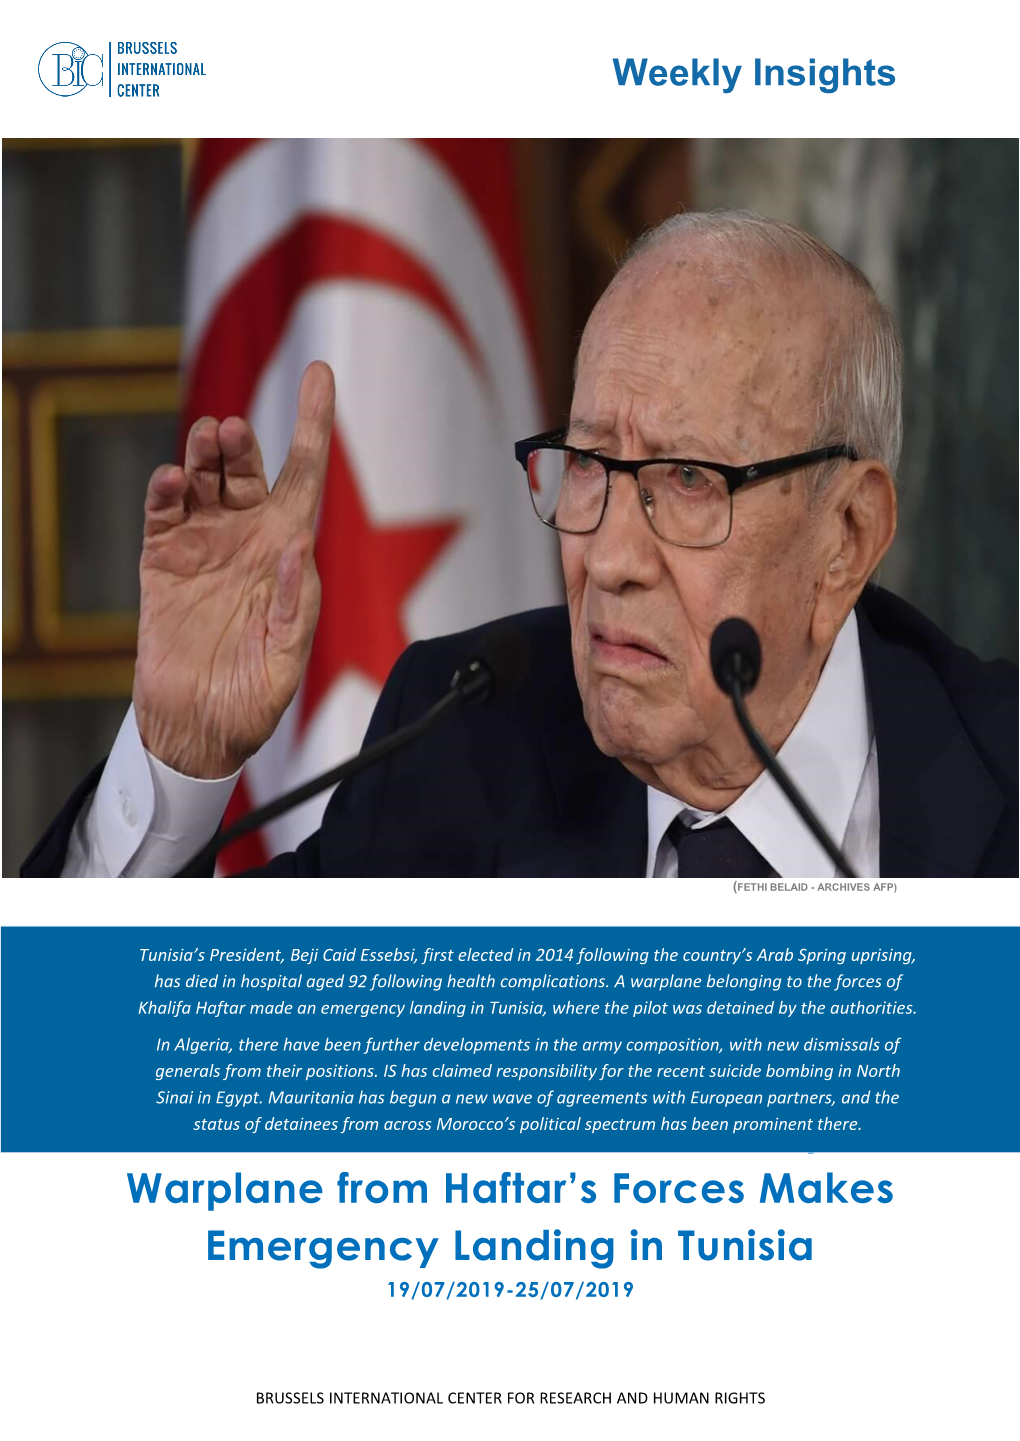 President Caid Essebsi Dies in Hospital; Warplane from Haftar's